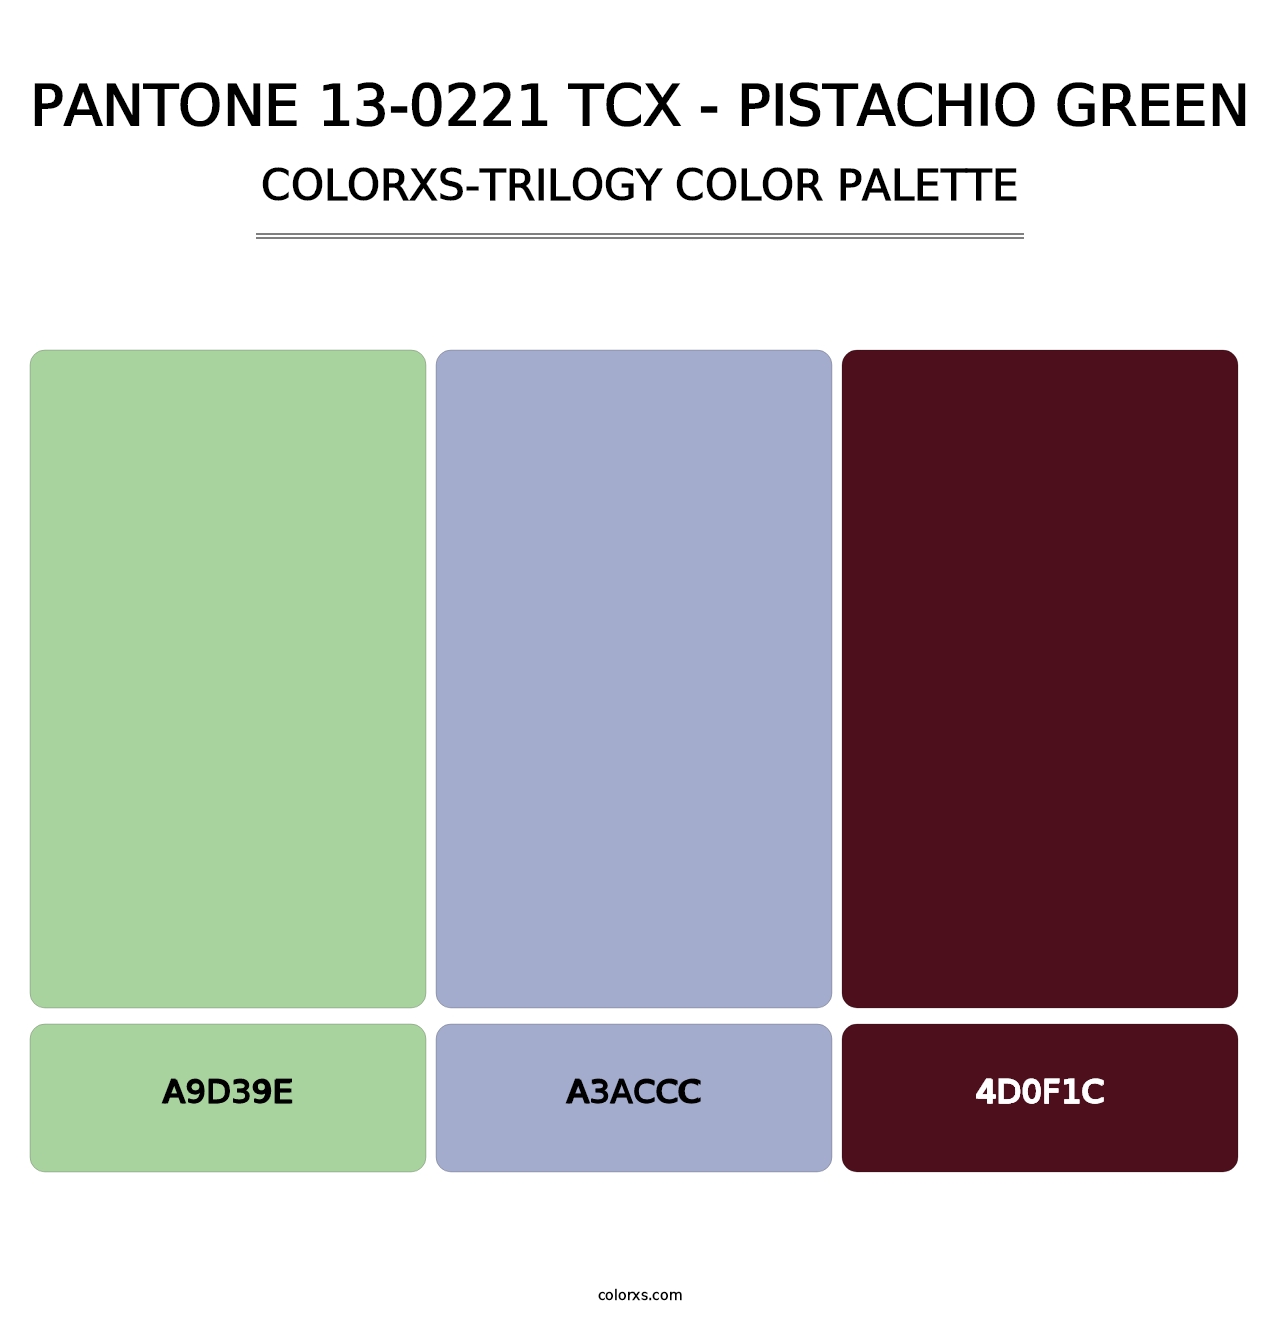 PANTONE 13-0221 TCX - Pistachio Green - Colorxs Trilogy Palette